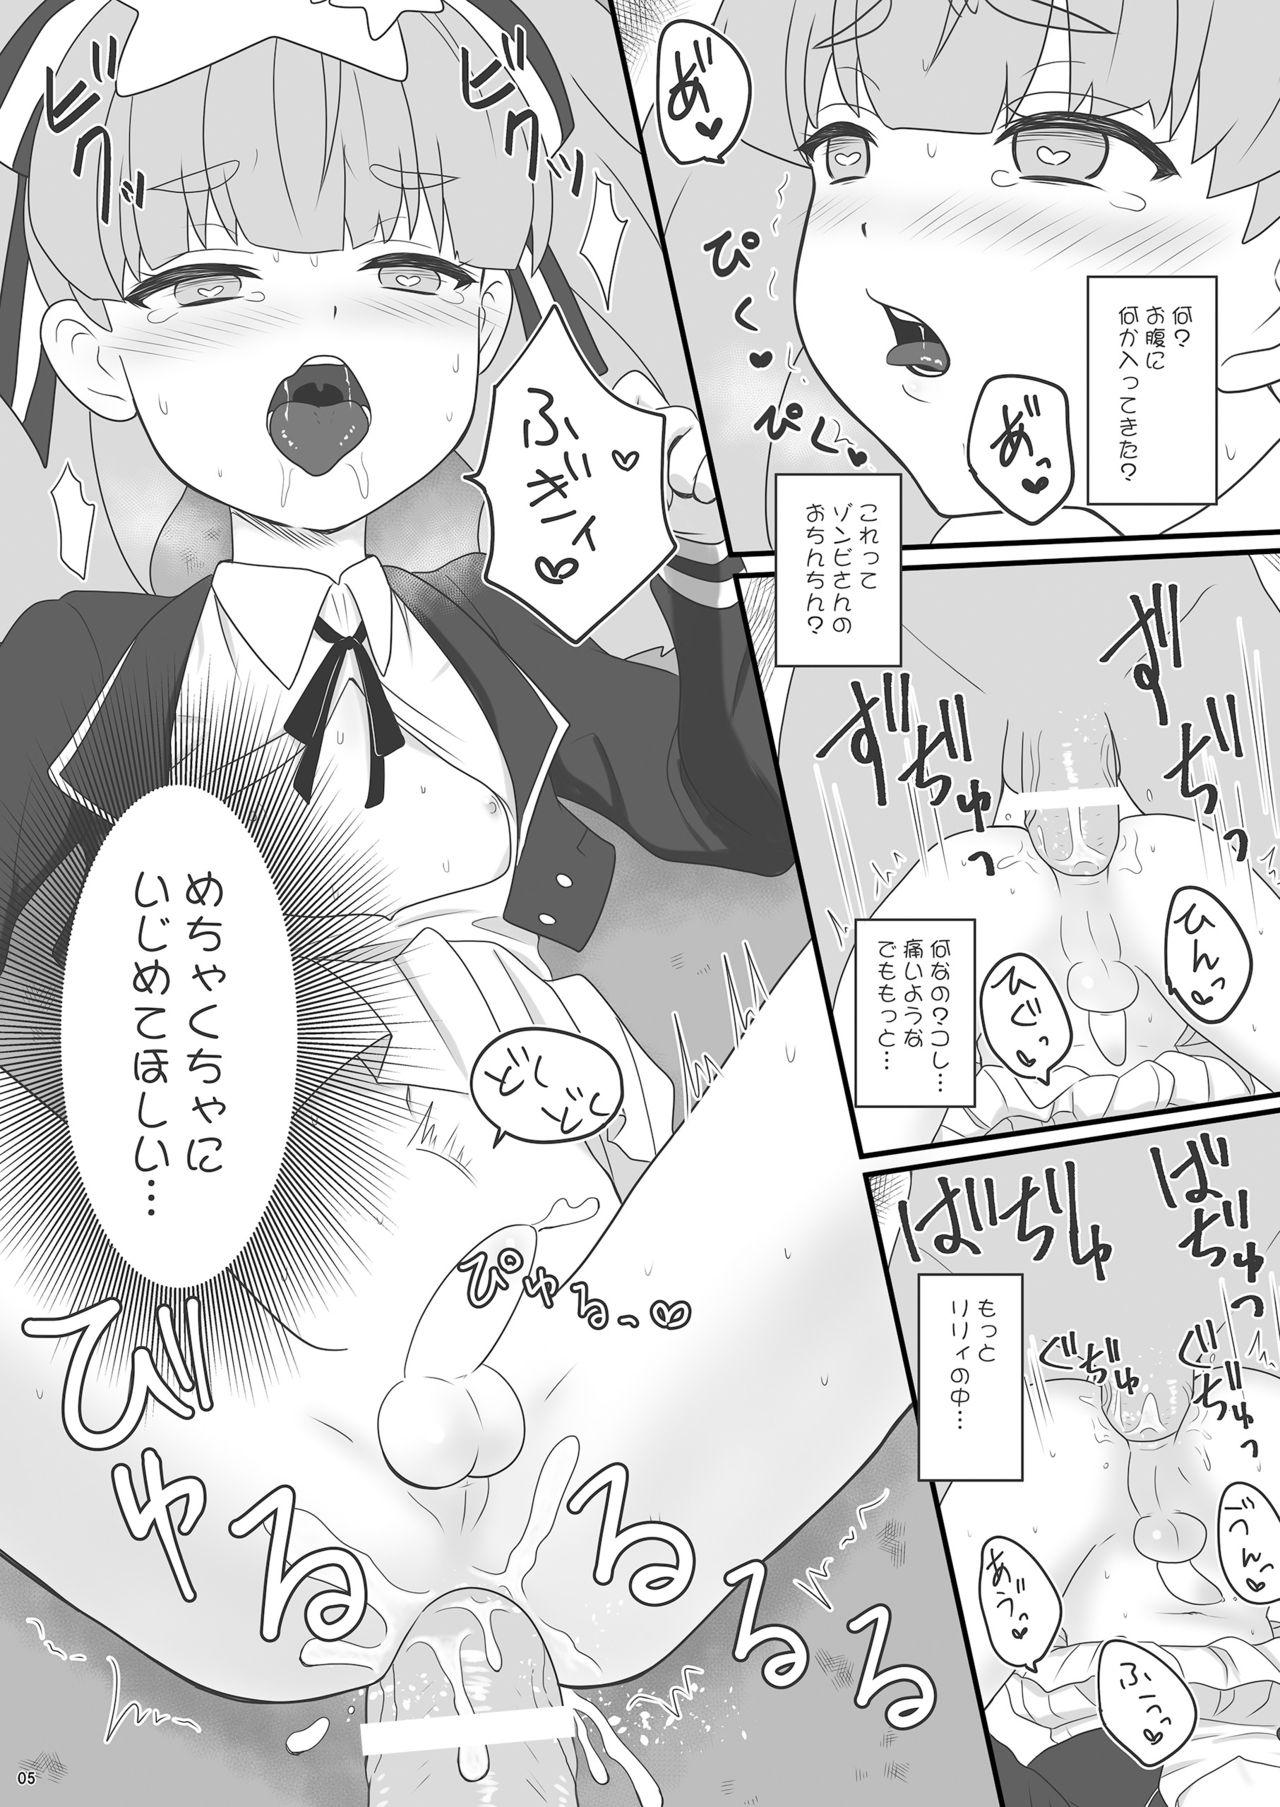 Cocks Zonsagariryi-chan ga zonbi ni tane tsuke sa reru manga - Zombie land saga Tinytits - Page 5